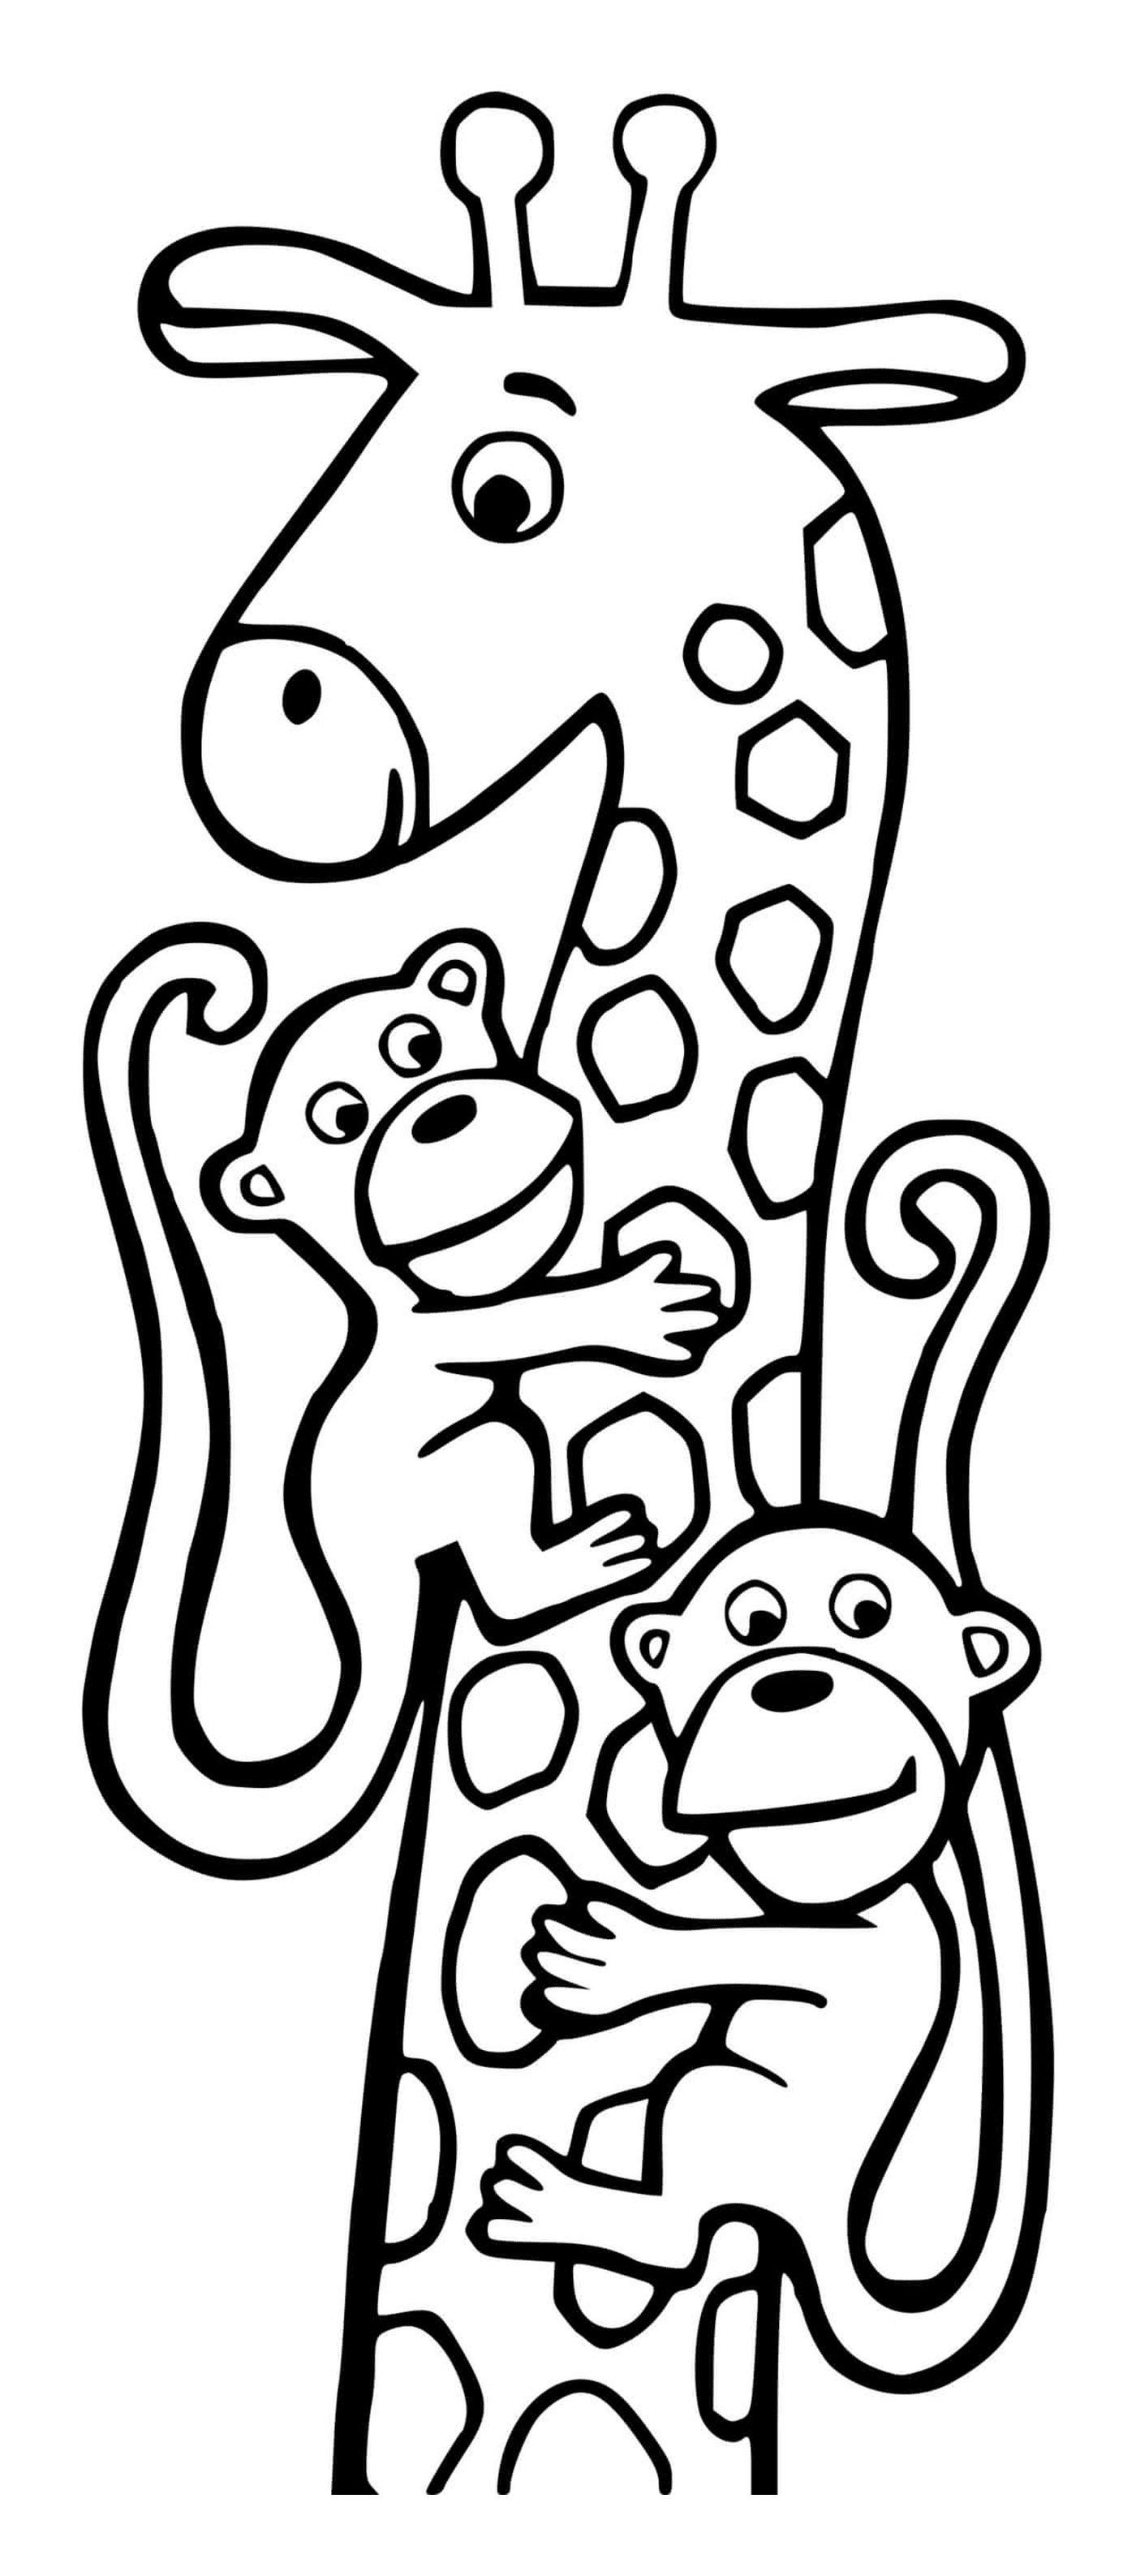  Girafe und zwei Affen 